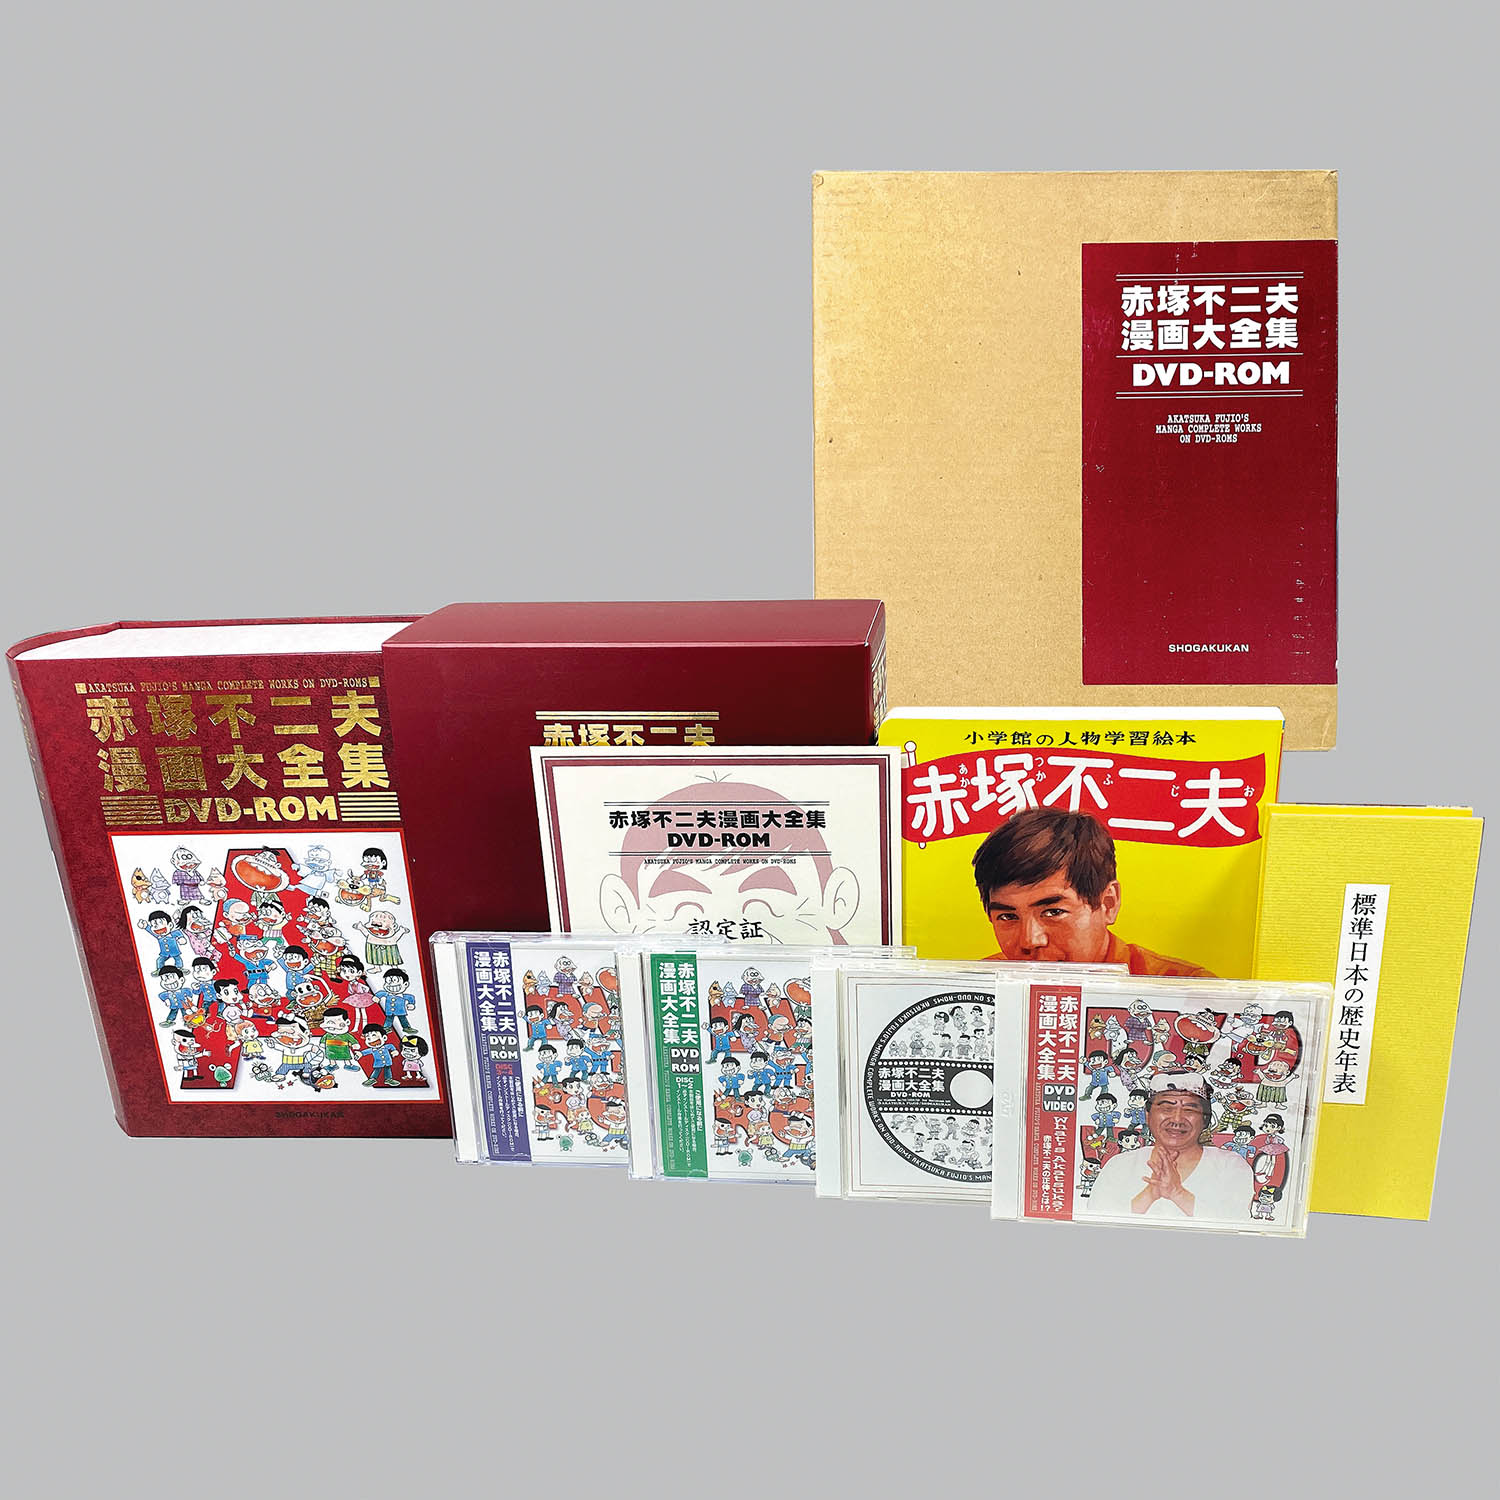 8510] 赤塚不二夫「赤塚不二夫漫画大全集 DVD-ROM」